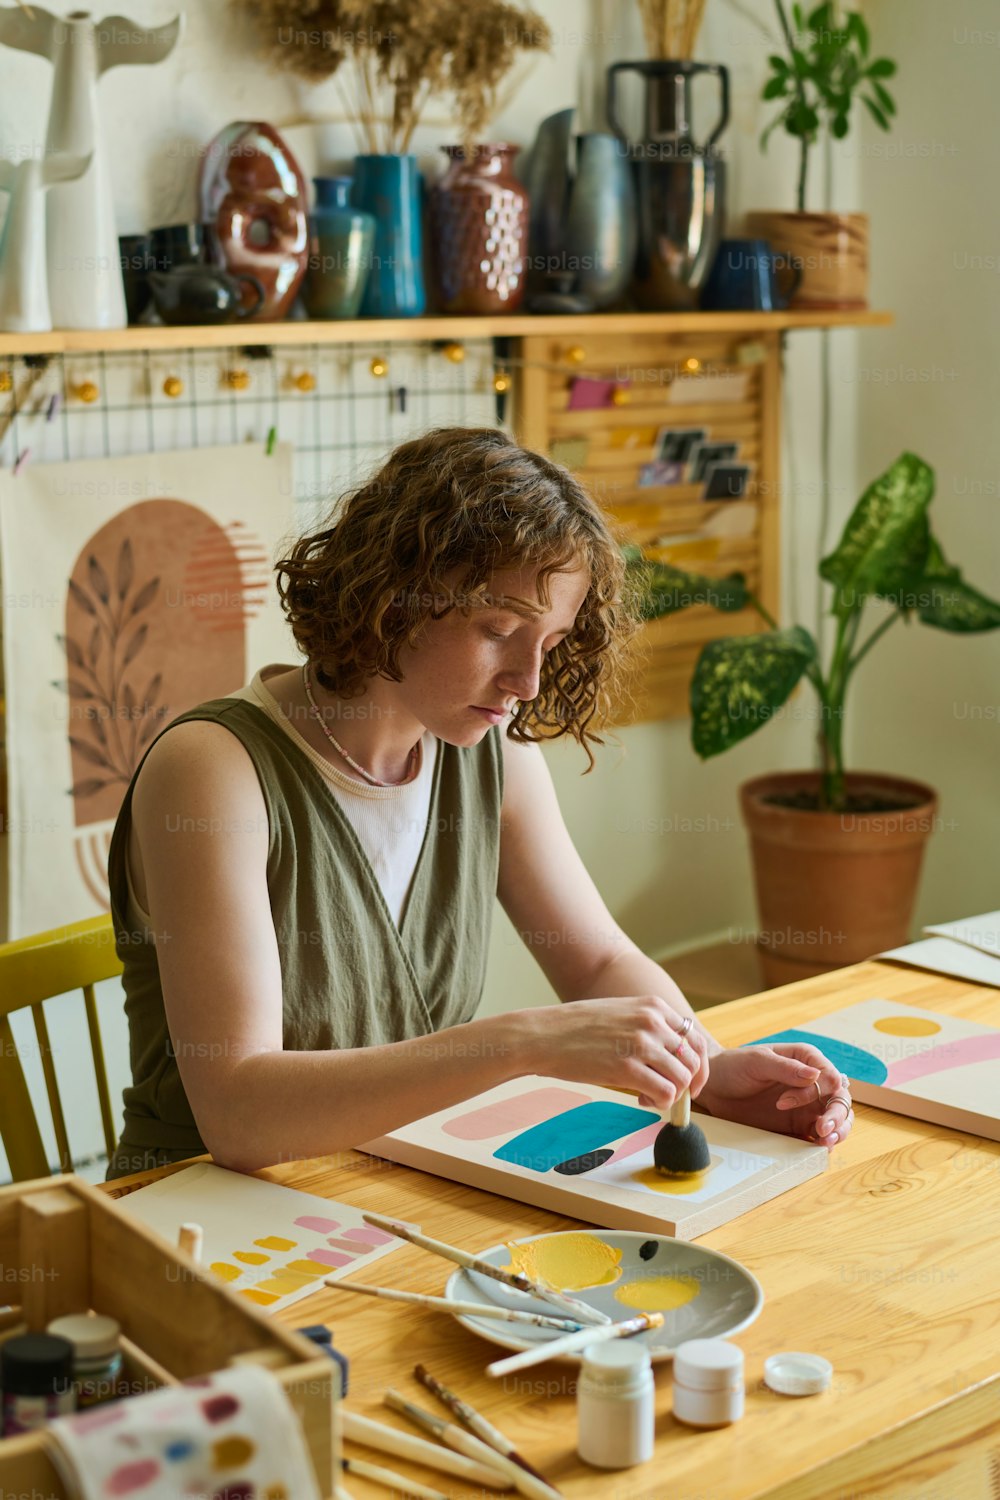 Artista femenina creativa en ropa informal que usa esponja para aplicar color en papel mientras trabaja sobre una nueva pintura abstracta en el taller